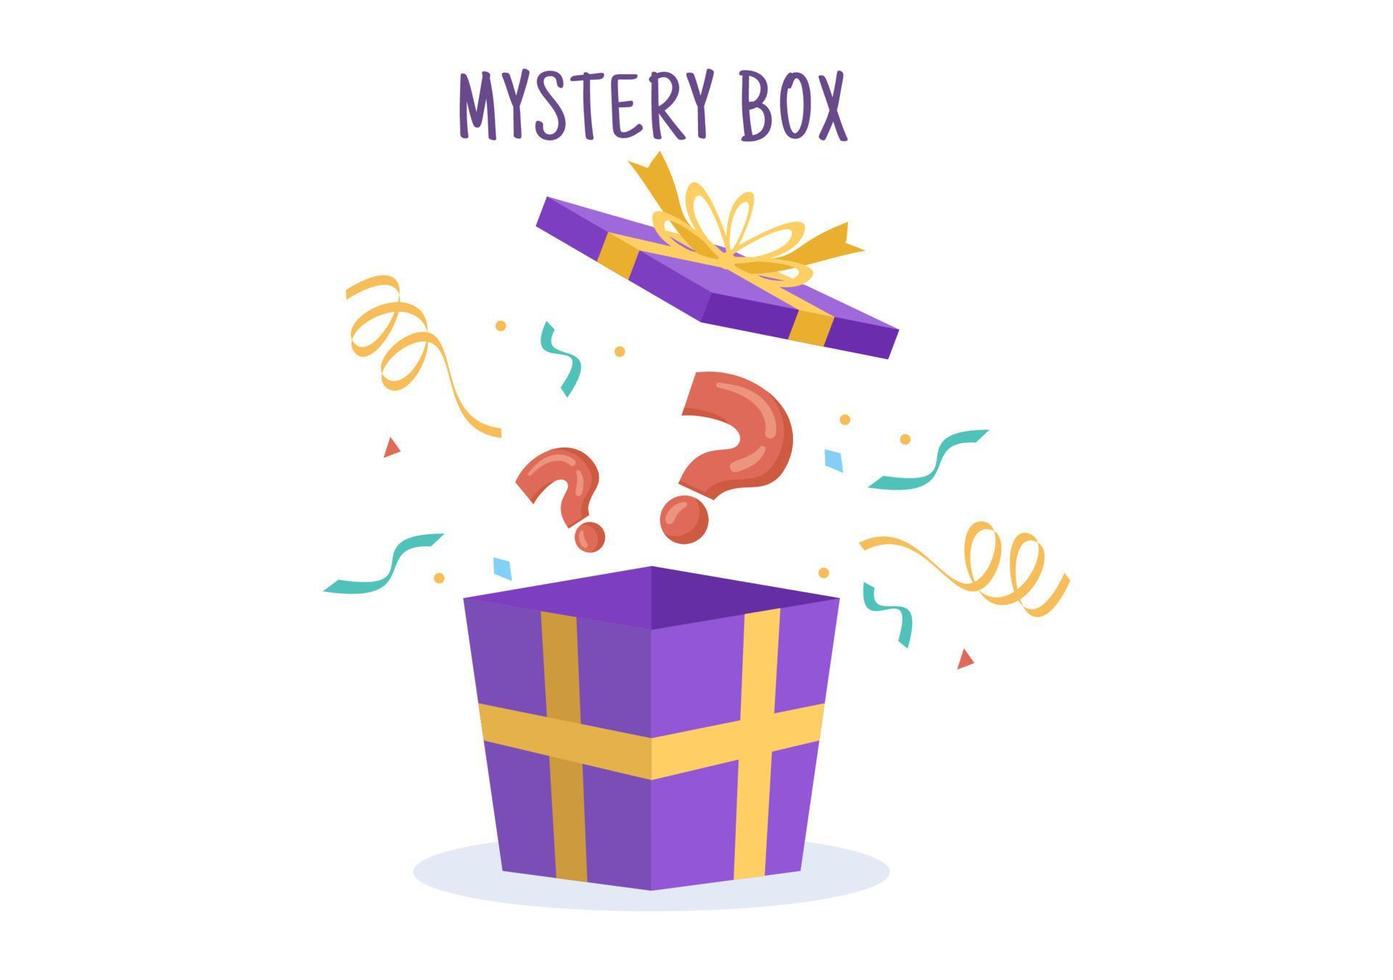 scatola regalo misteriosa con scatola di cartone aperta all'interno con un punto interrogativo, un regalo fortunato o un'altra sorpresa in un'illustrazione piatta in stile cartone animato vettore